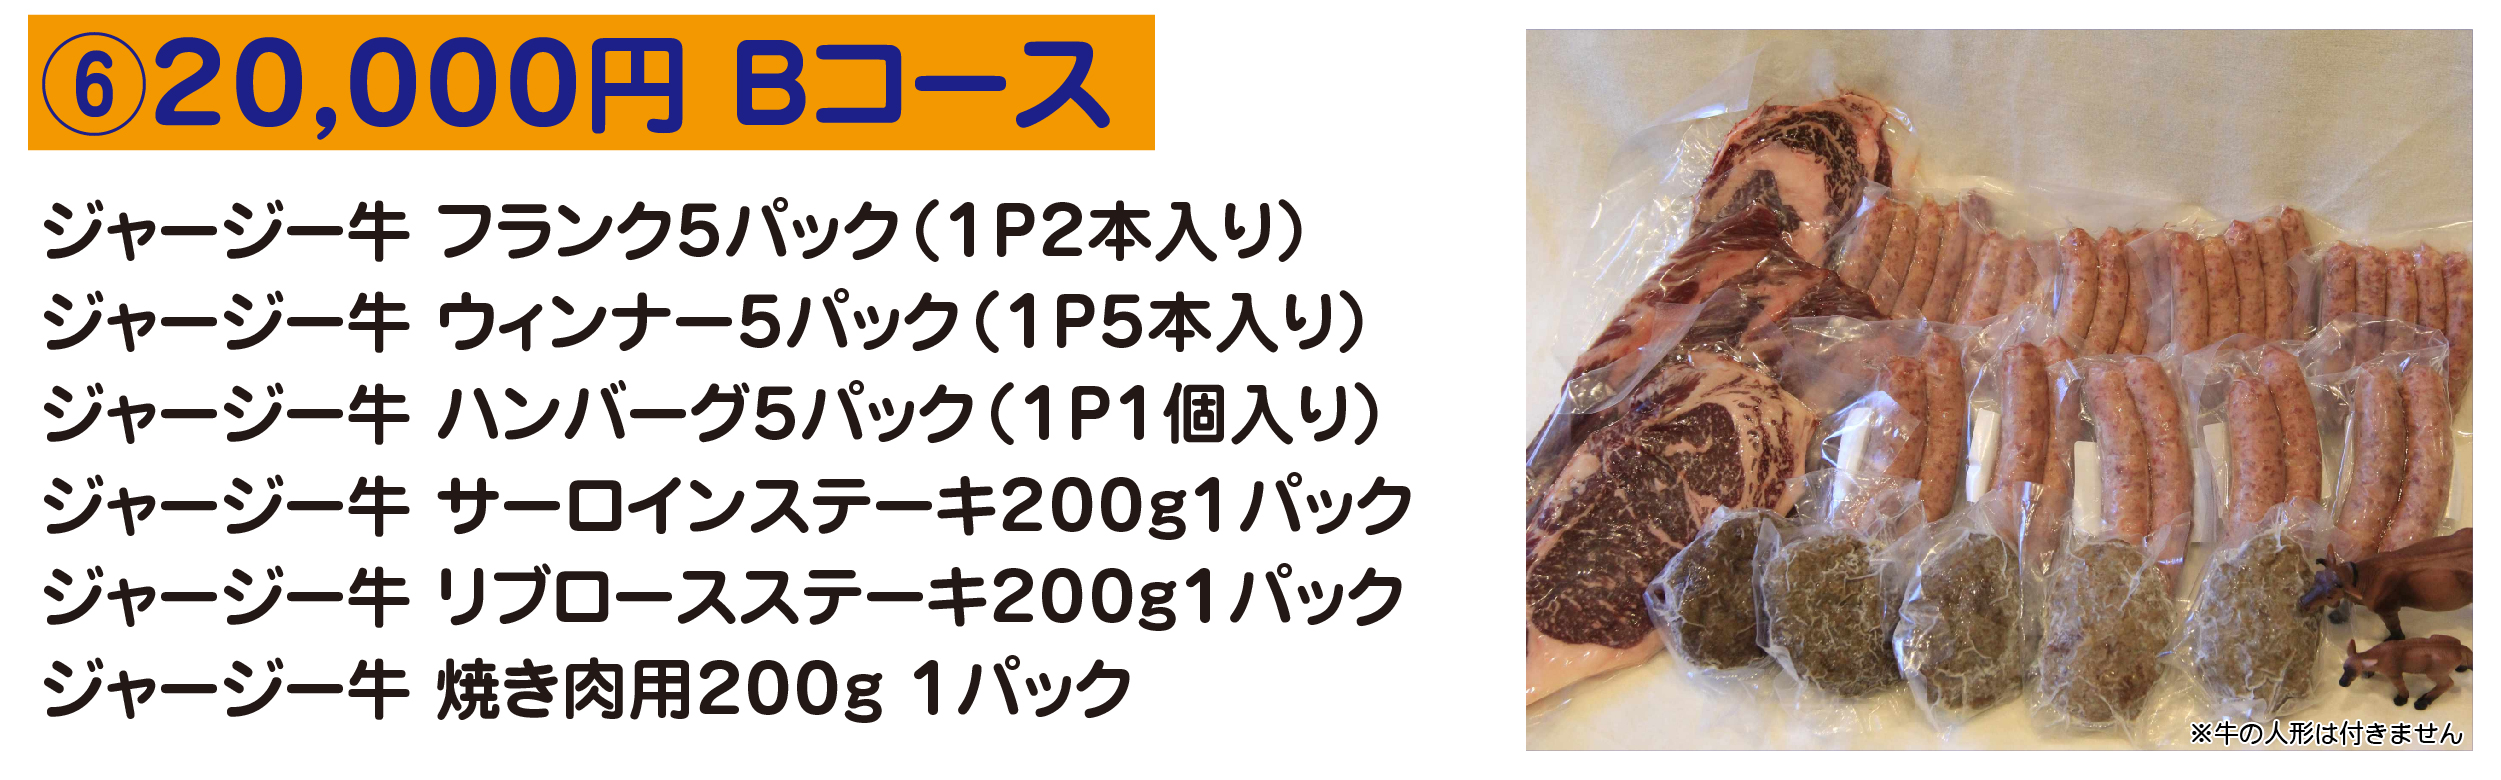 20,000円 Bコース